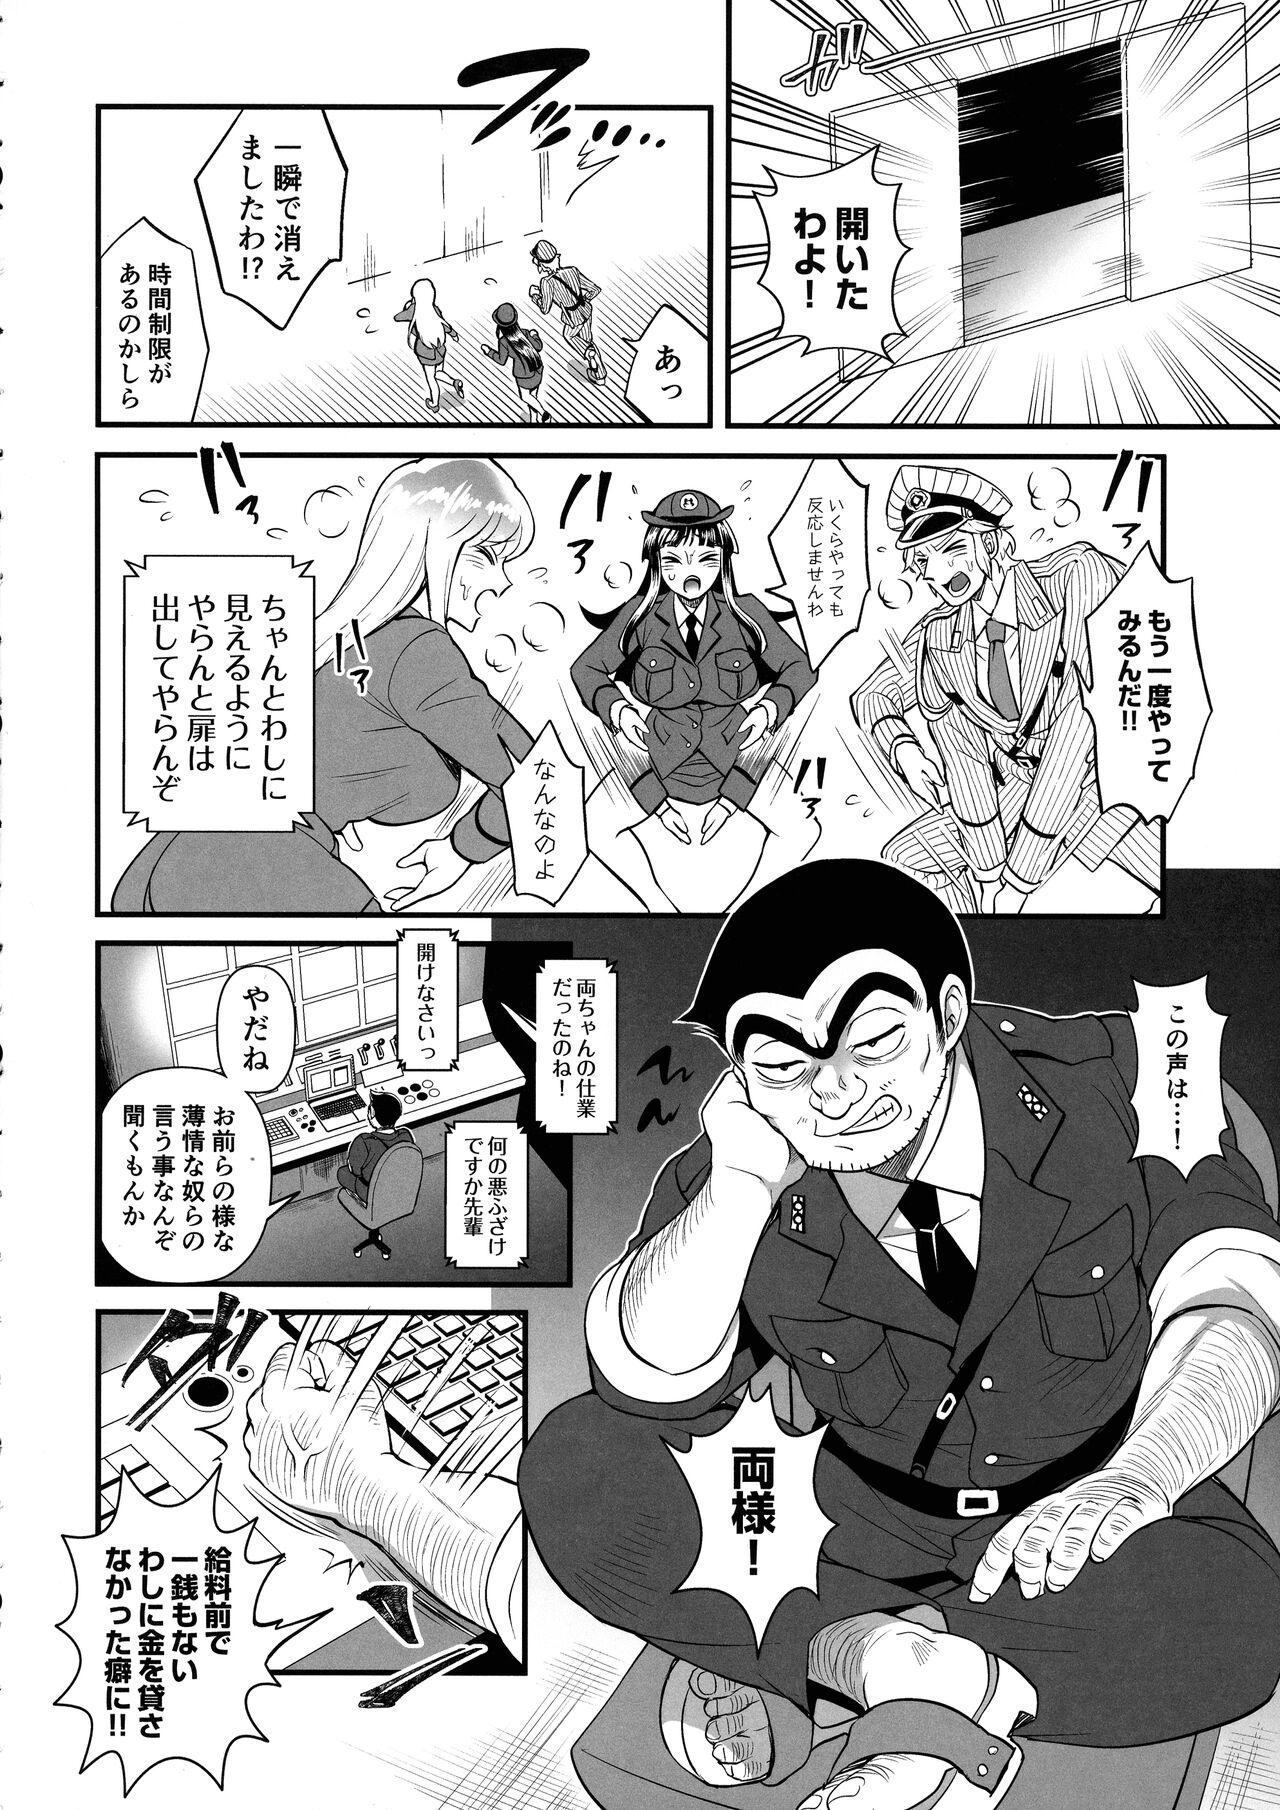 Reiko & Maria & Nakagawa ga Ogeretsuna Koto o Shinai to derarenai Heya no Maki 5